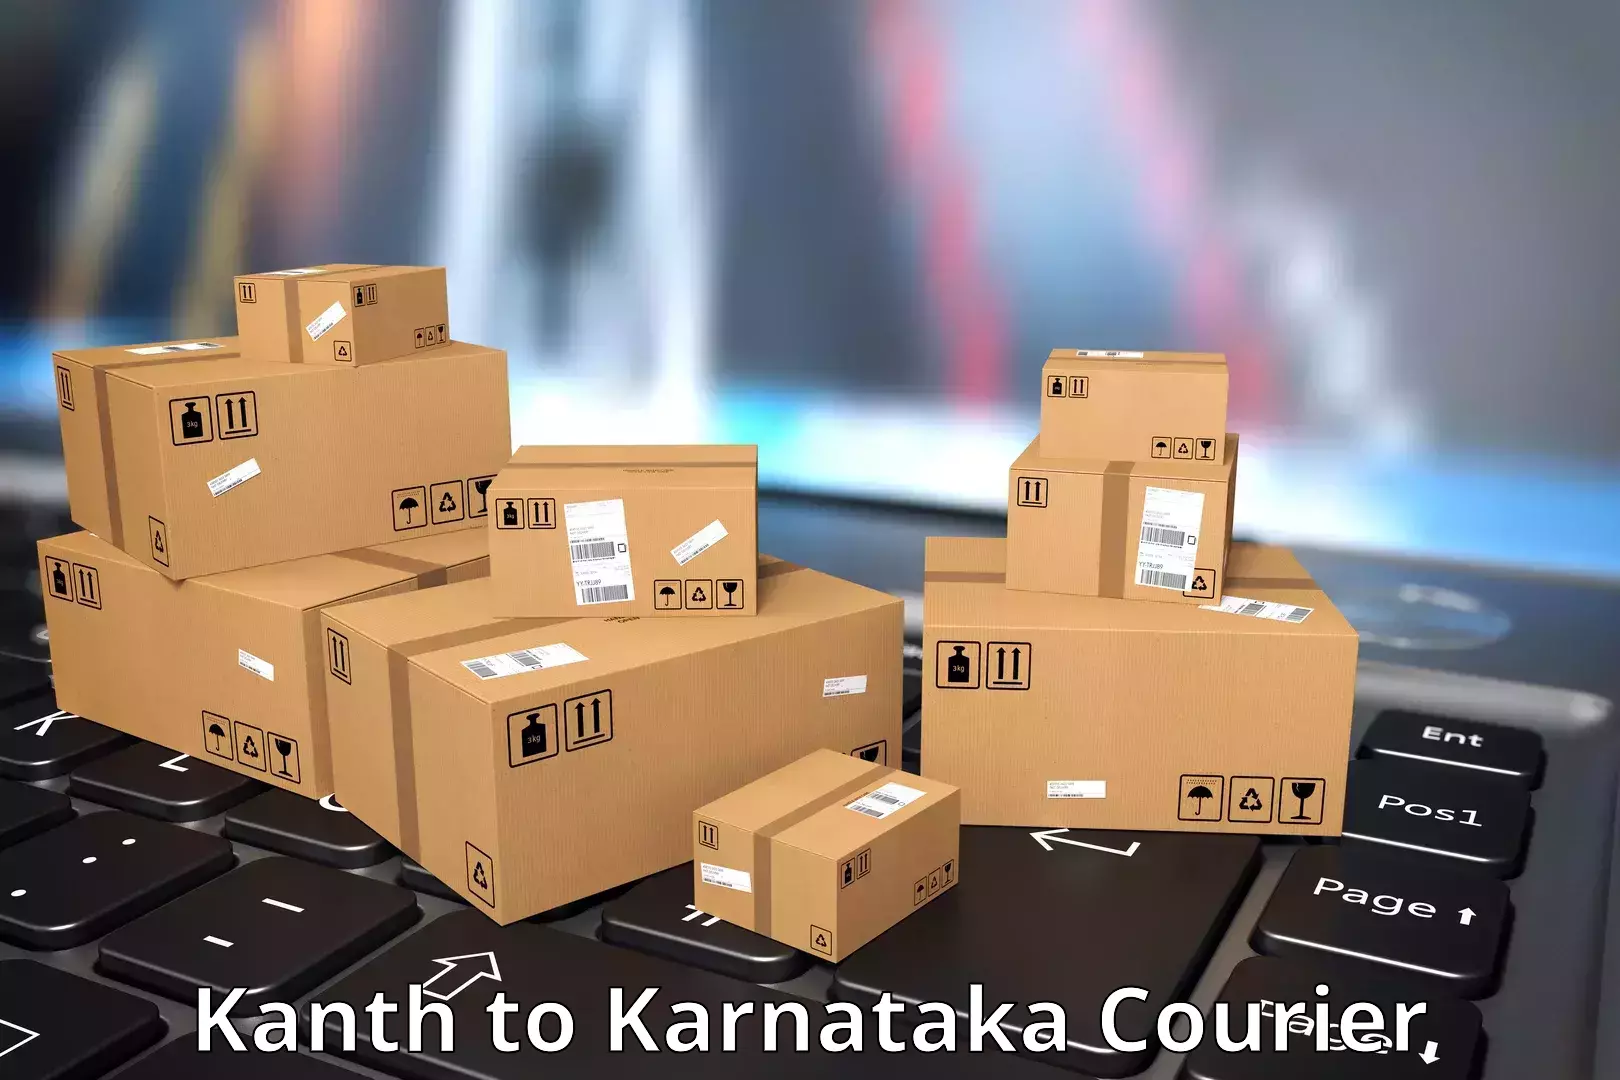 Global shipping networks Kanth to Chitradurga